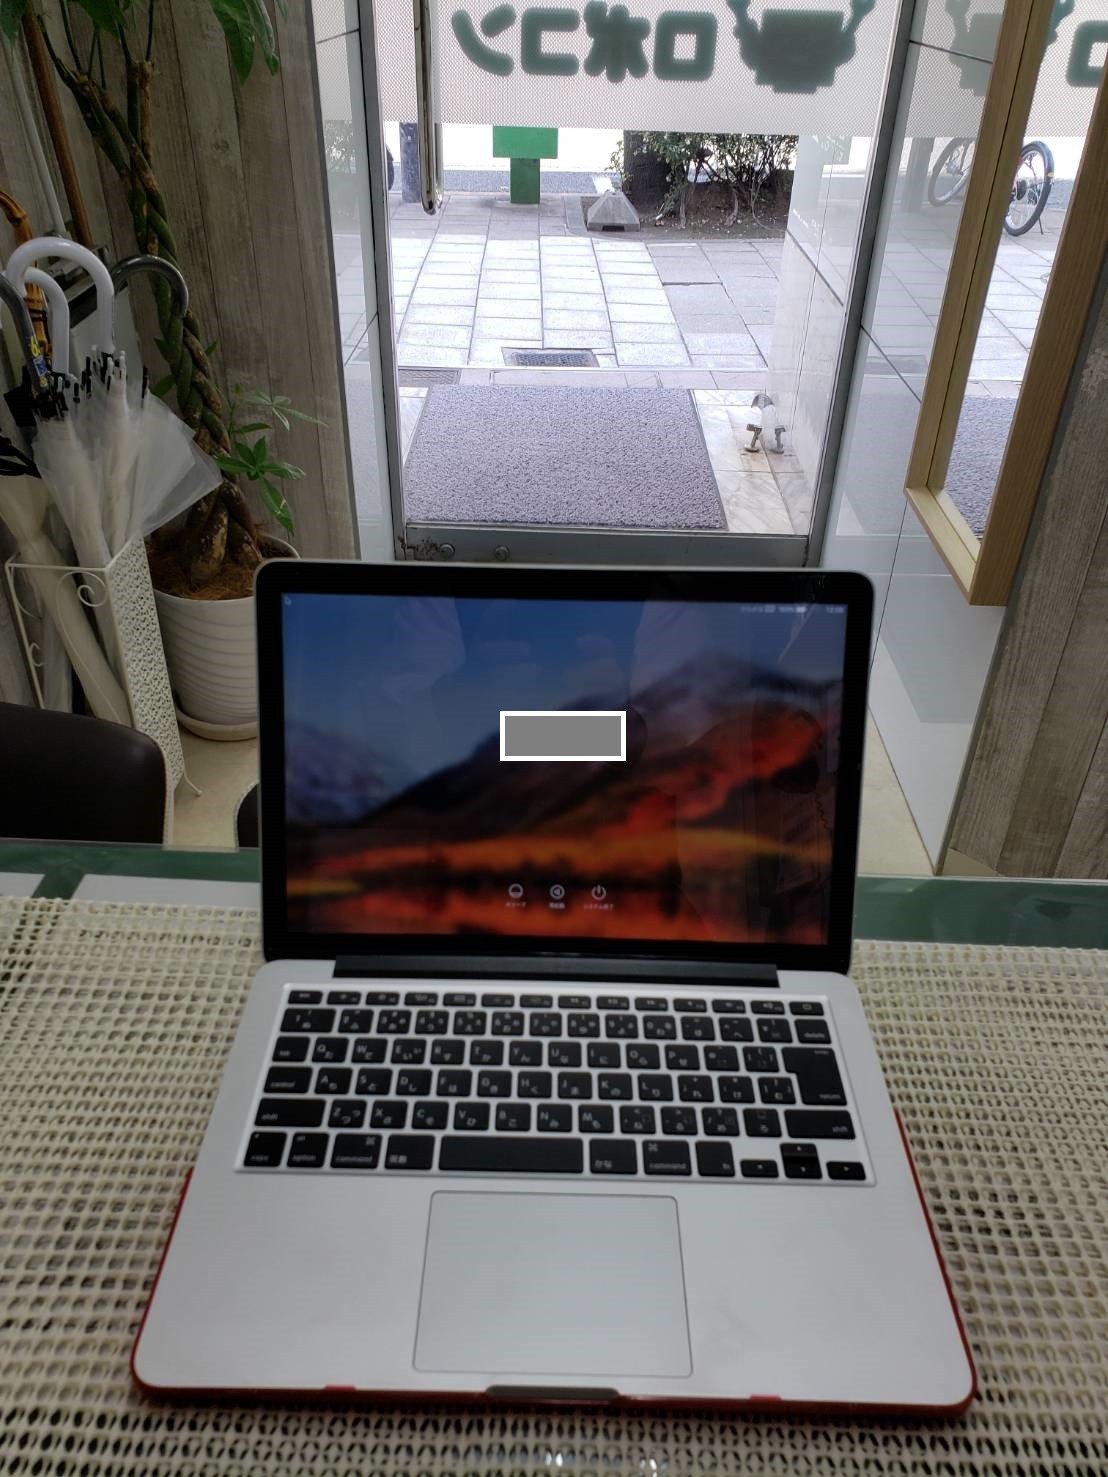 MacBook Pro ノートパソコン 依頼主様：大阪市内 個人様 診断方法：持ち込み 障害内容：いつものように使っていましたが。突然電源が落ち、電源を入れると画面が立ち上がらなくなったので持ち込みされた修理事例 1